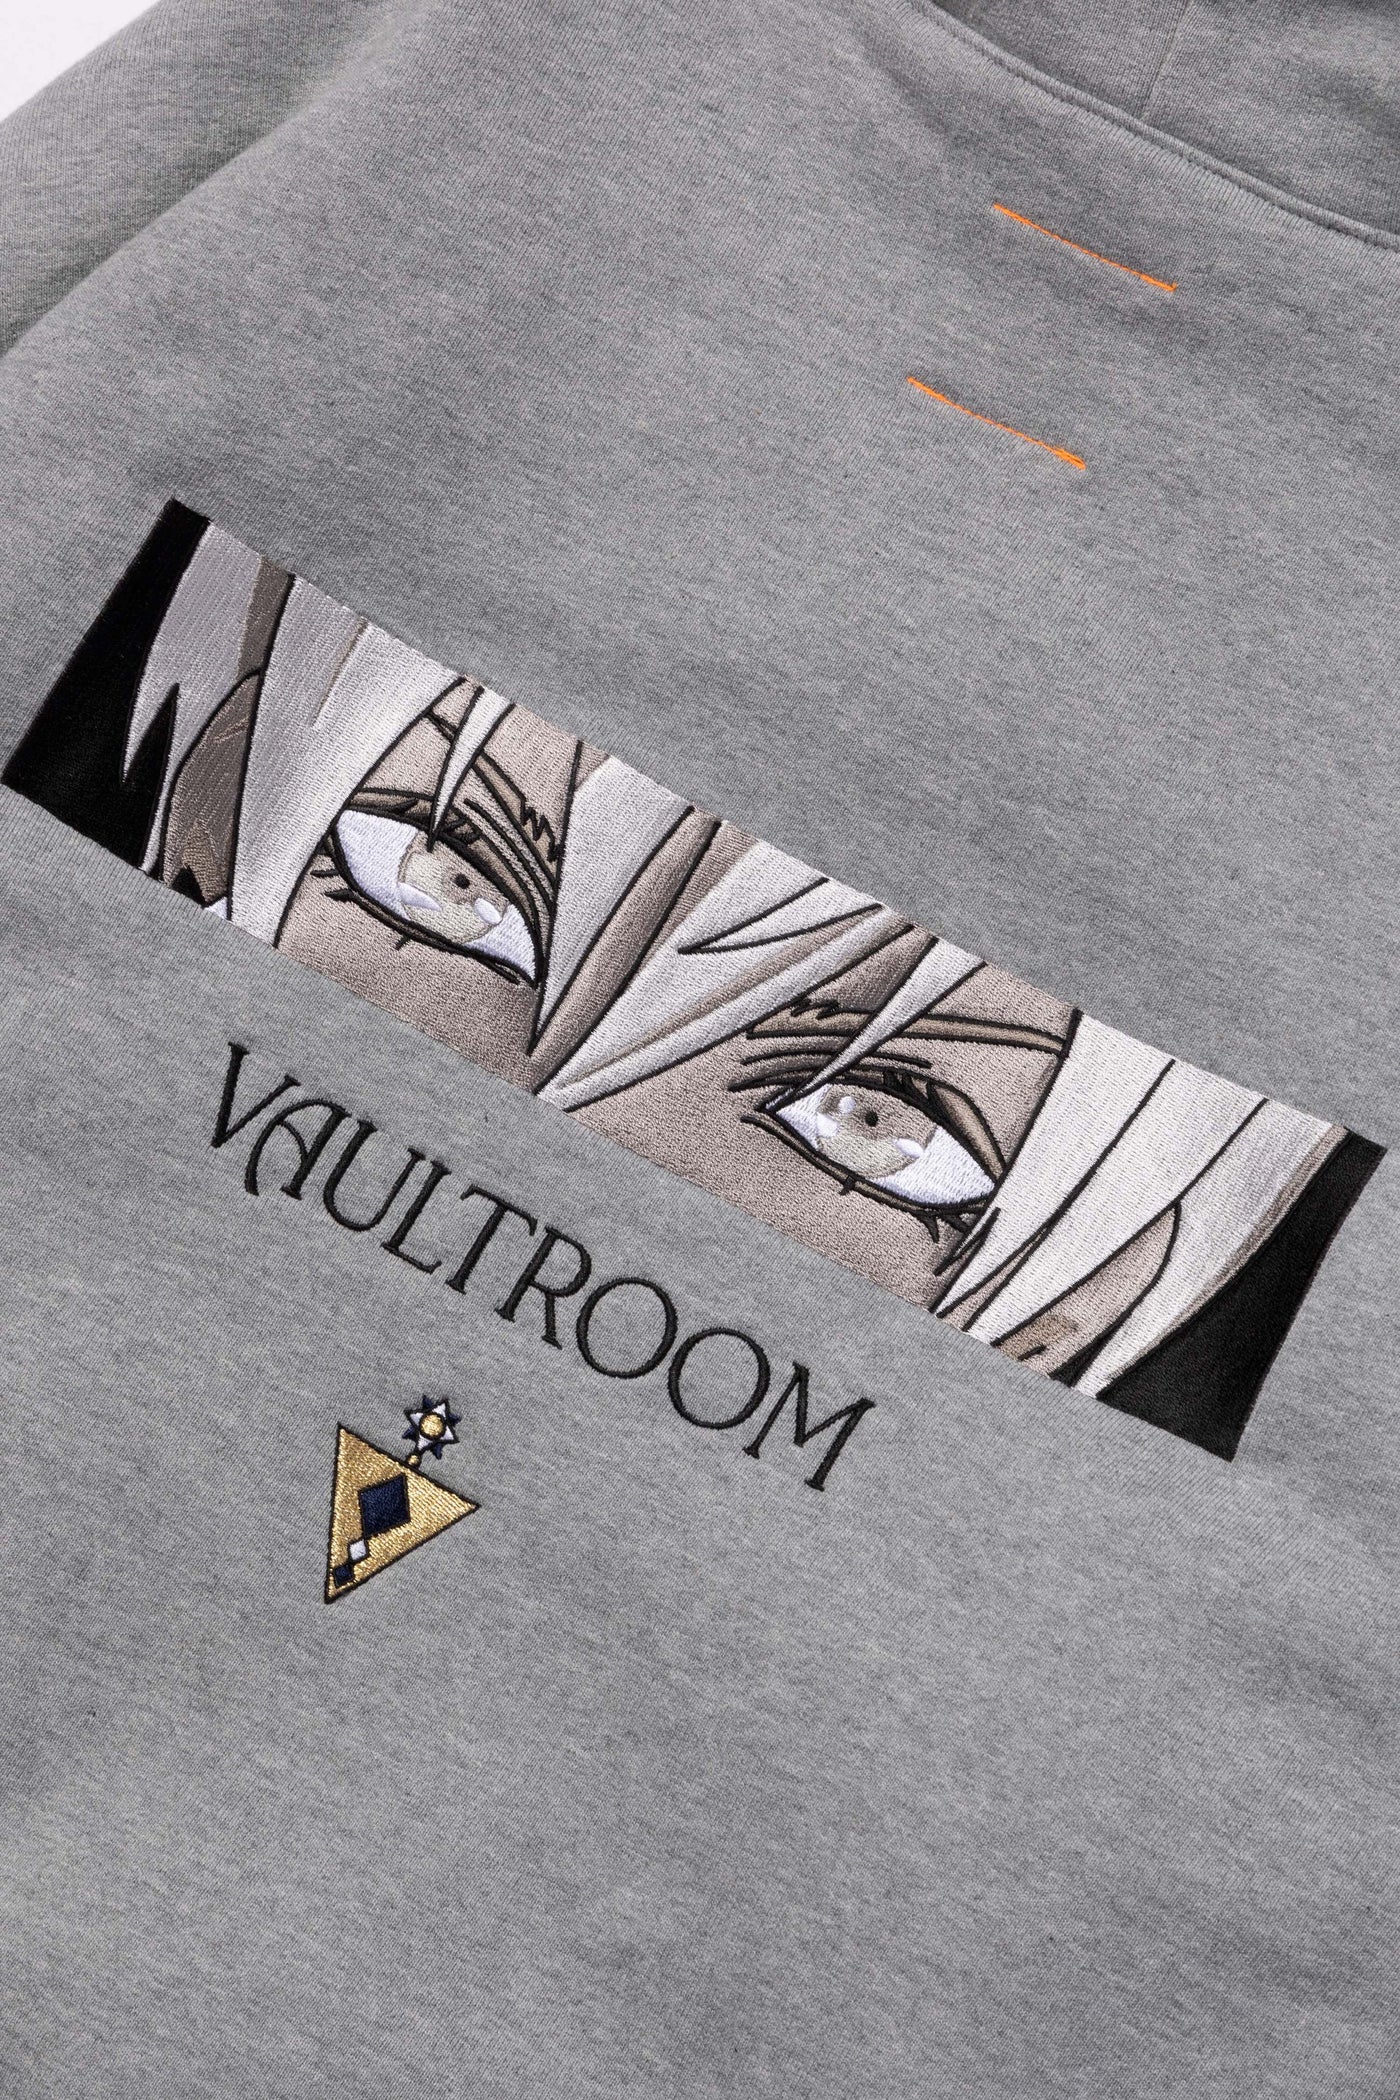 vaultroom イブラヒム グレー Lサイズ-